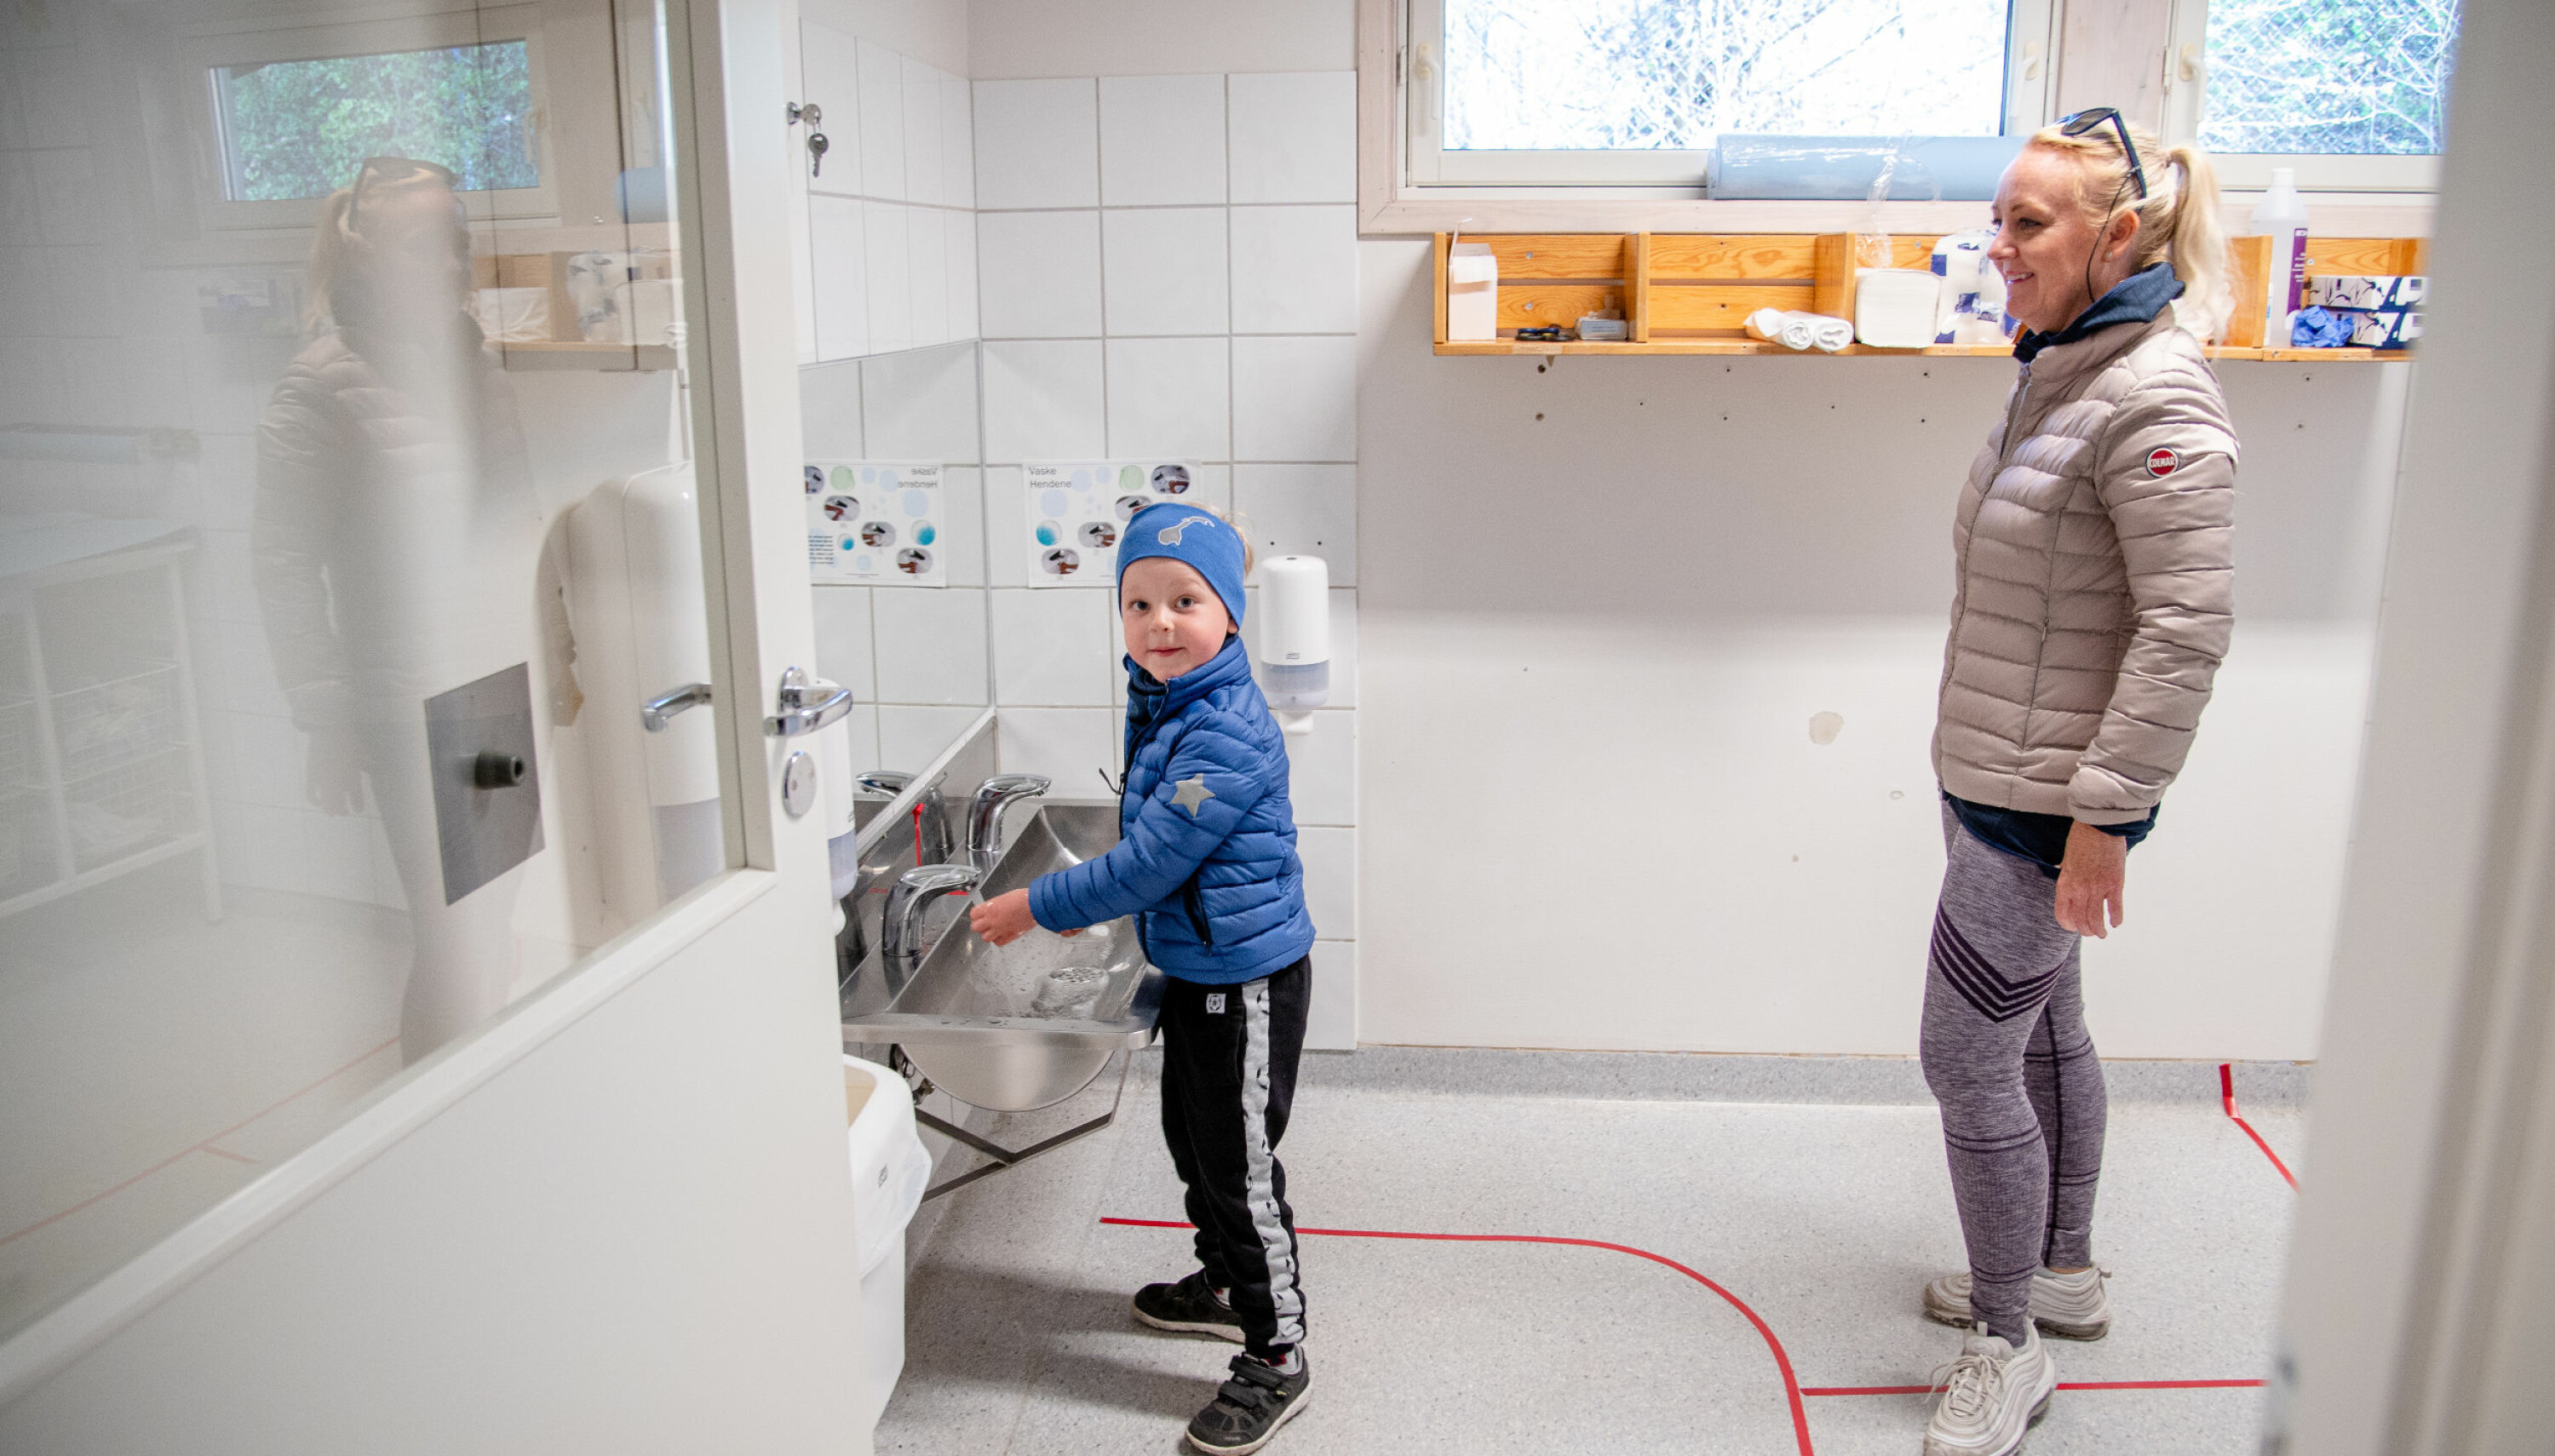 Før han kan begynne å leke, må Aksel Holst Marti vaske hender. Mamma Hanne Holst følger de oppteipede avstandsreglene.